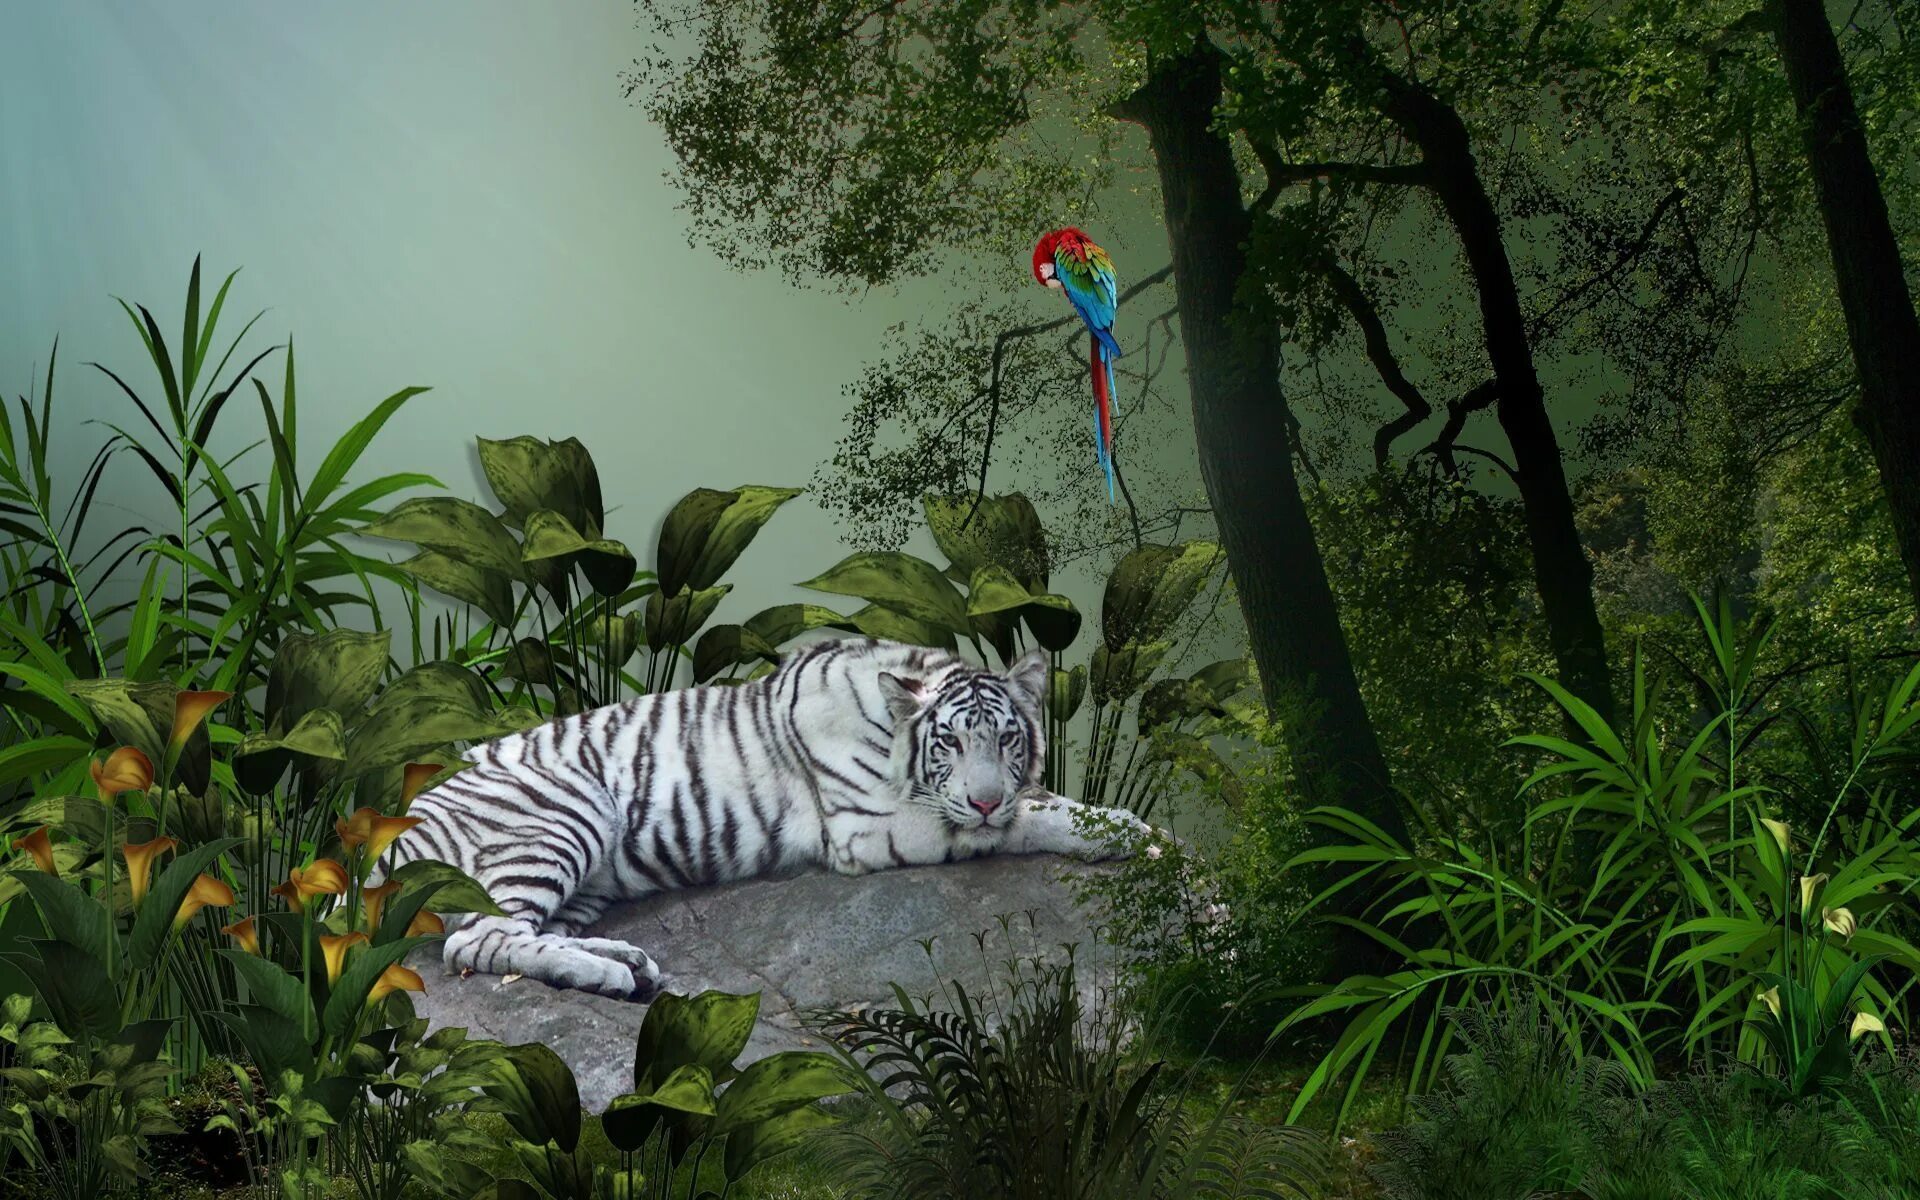 Обои джунгли. Животные джунглей. Тигр в джунглях. Фотообои с животными. Jungle download